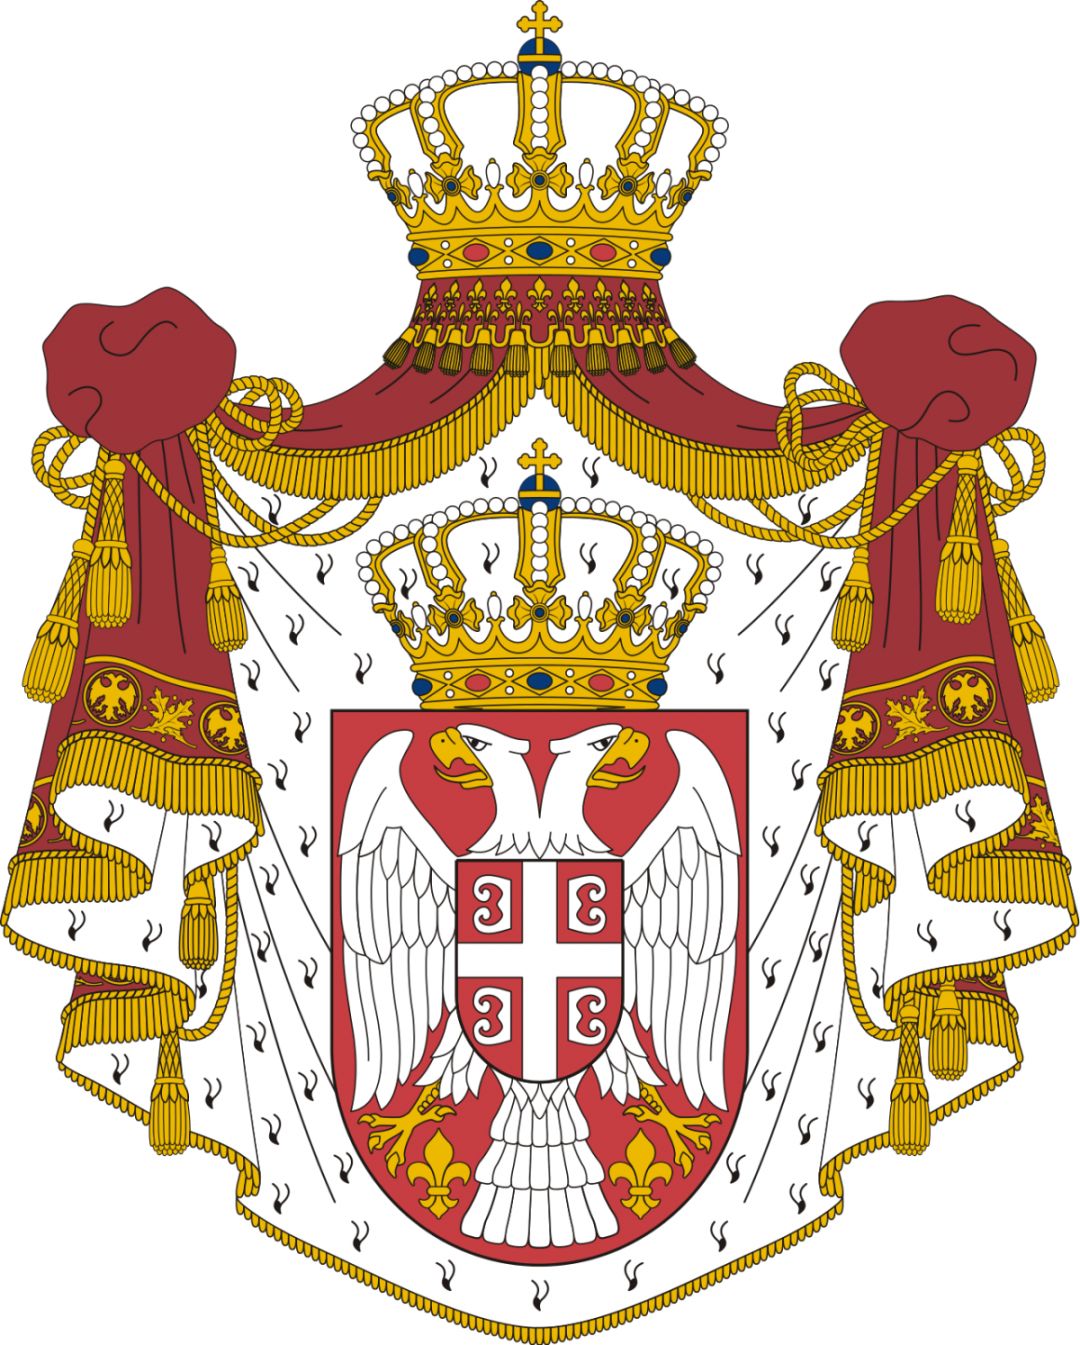 双头鹰标识常见于欧洲多国徽章和旗帜上大部分源自拜占庭帝国的国徽